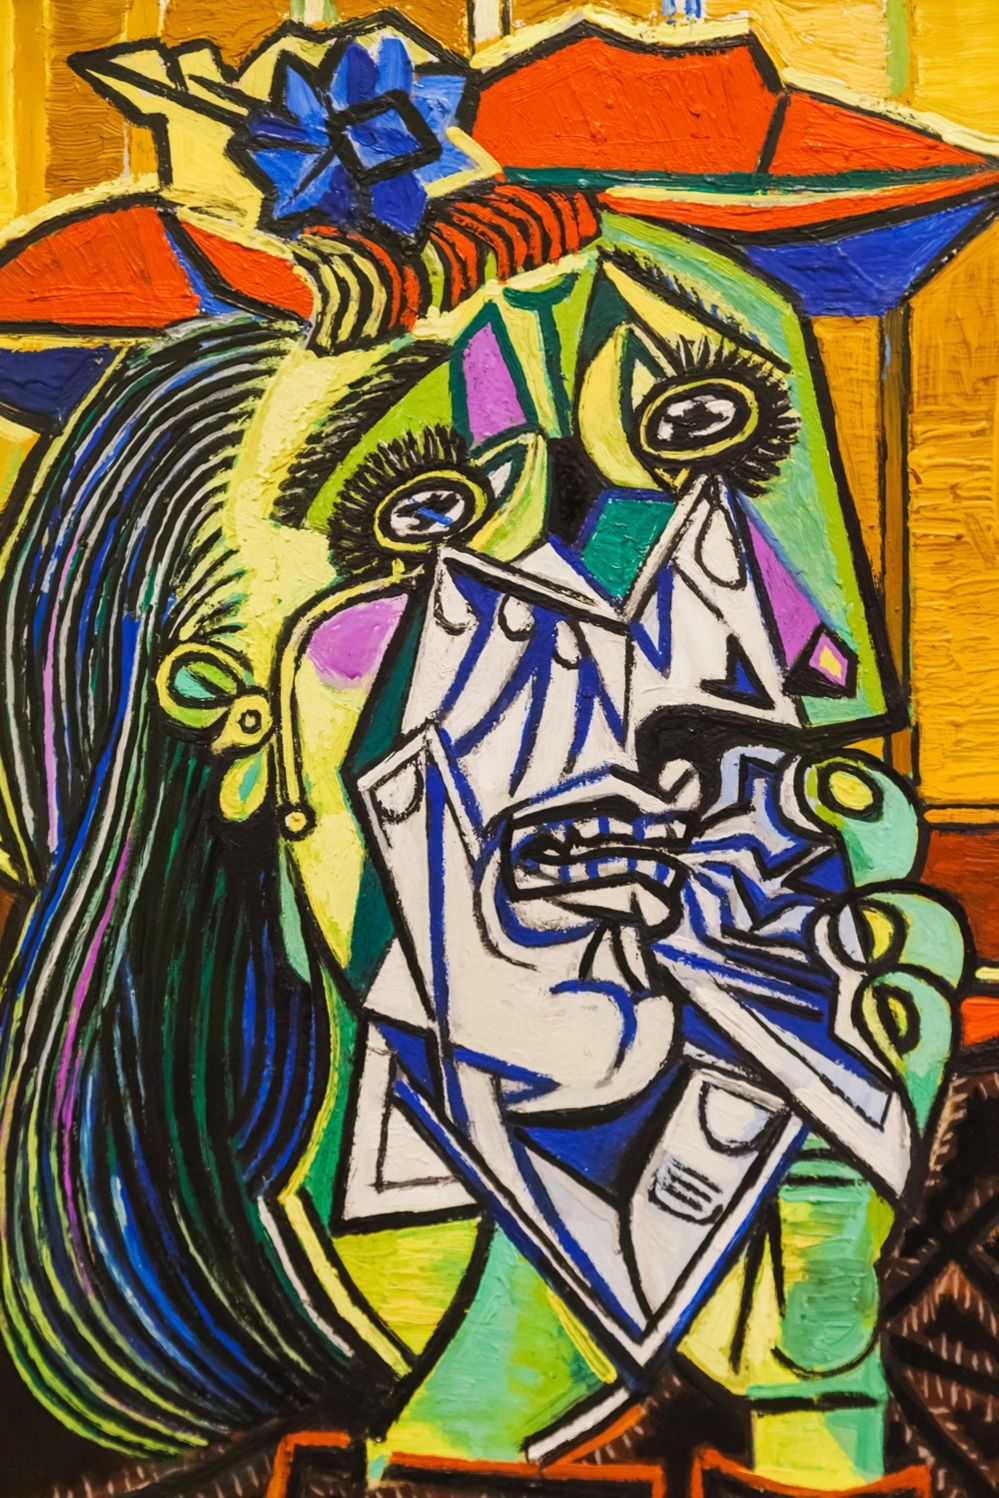 Плачущая женщина (1937), картина Пикассо